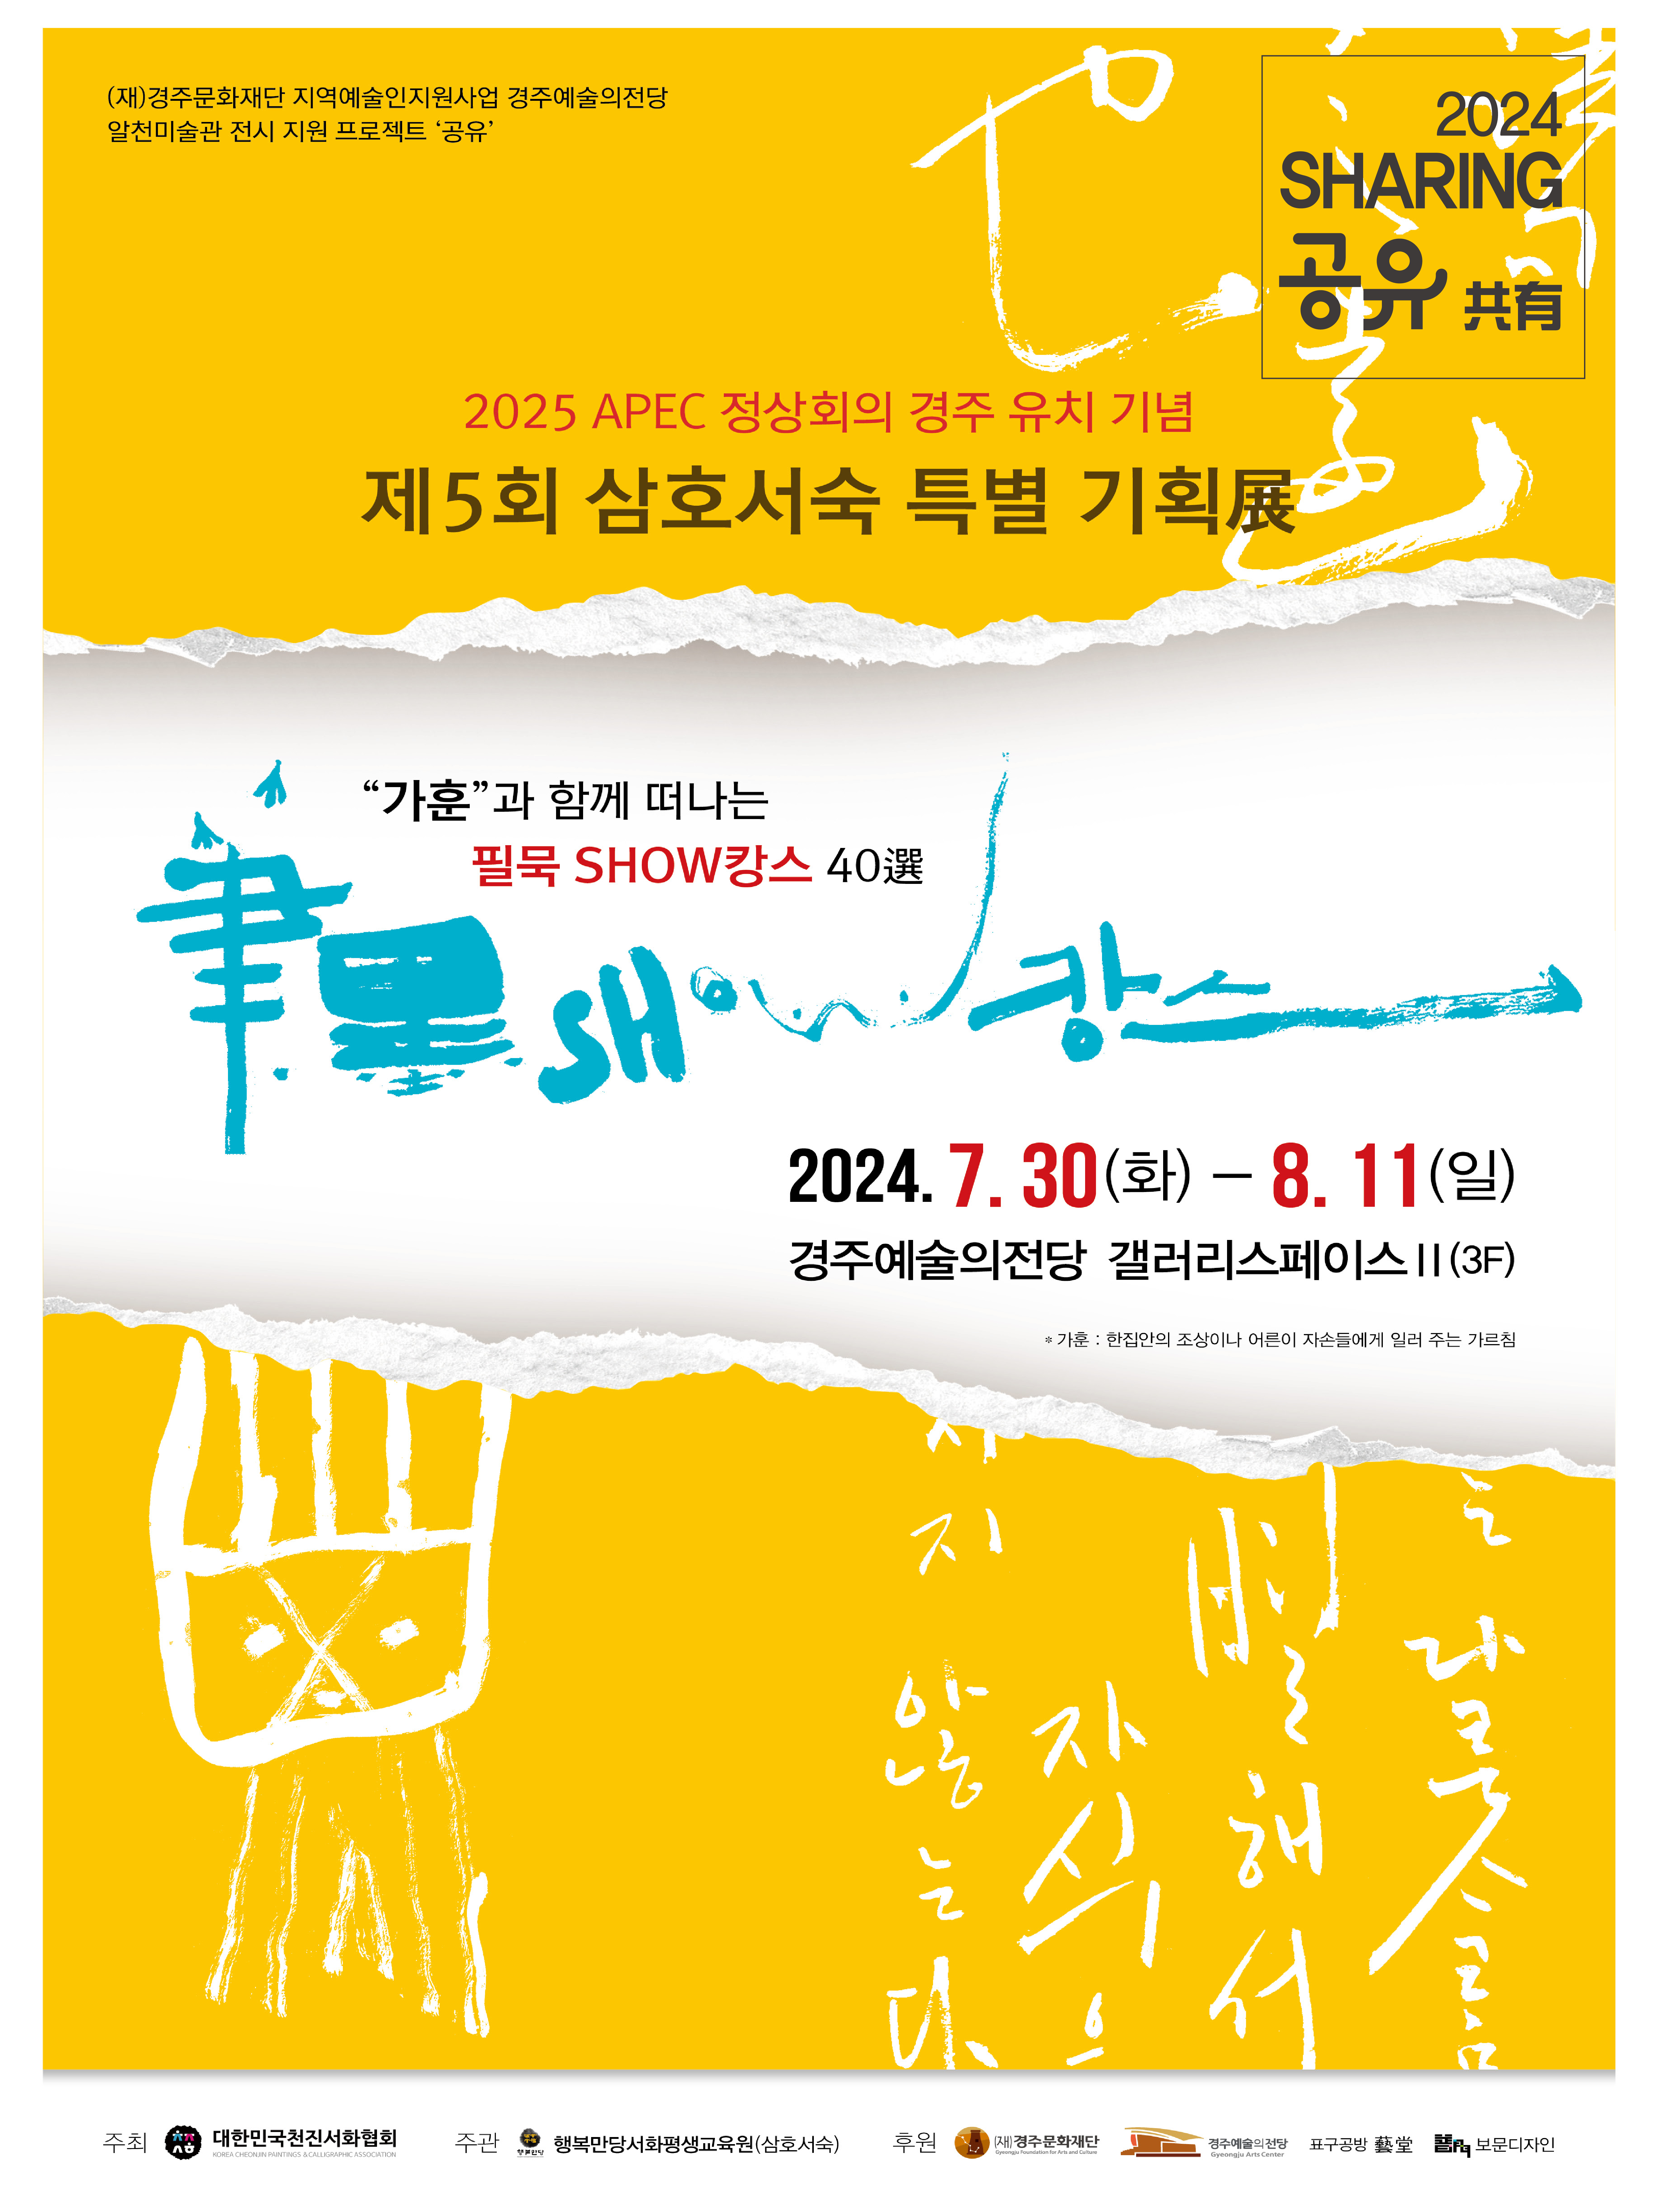 2024 전시공간지원프로젝트 '공유' - 대한민국천진서화협회